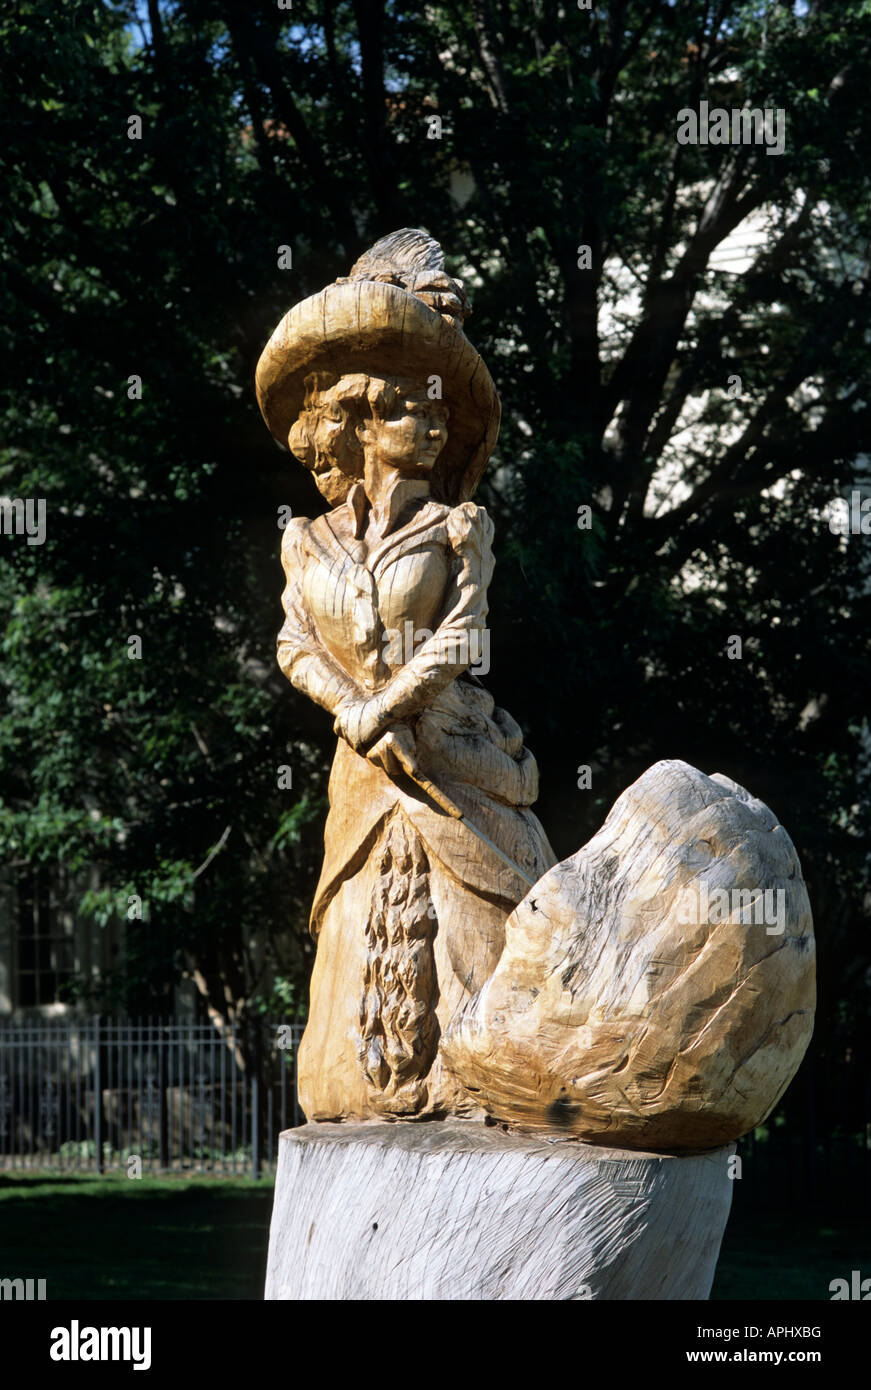 Dame victorienne de sculpture sur bois de l'arbre ENDOMMAGÉ PAR UNE TEMPÊTE À ST. PAUL, Minnesota. Banque D'Images